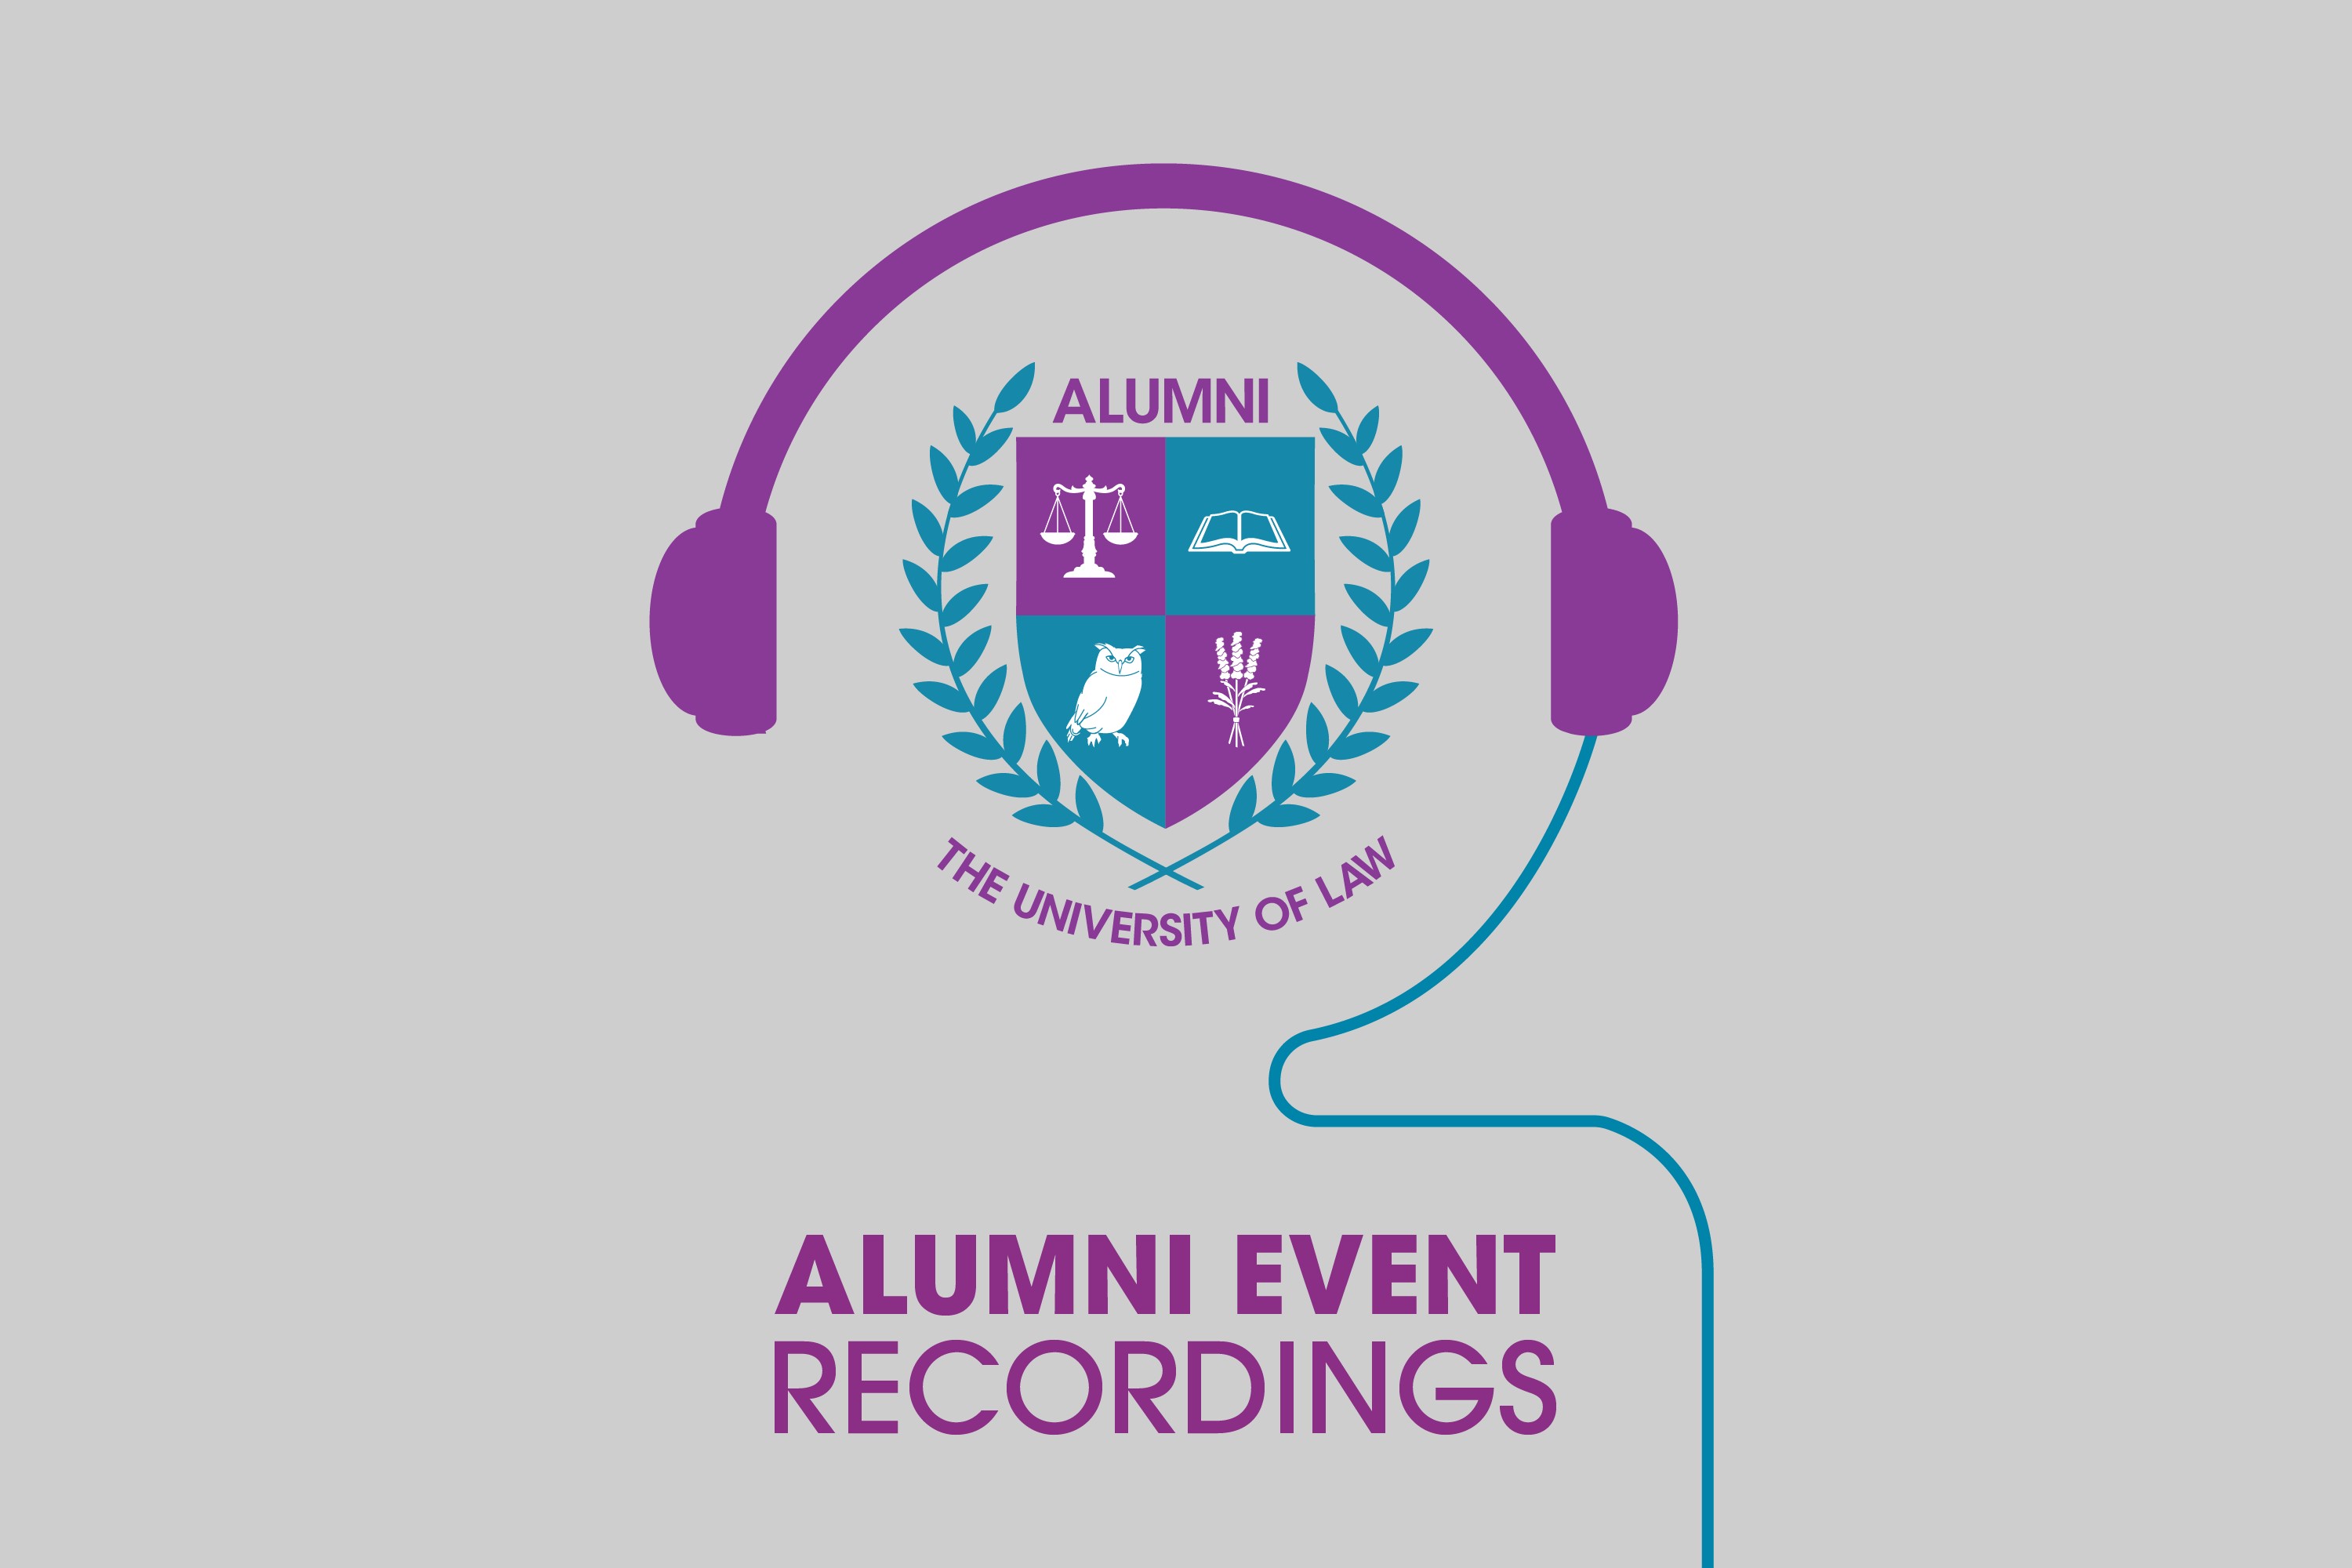 Alumni Event Recordings